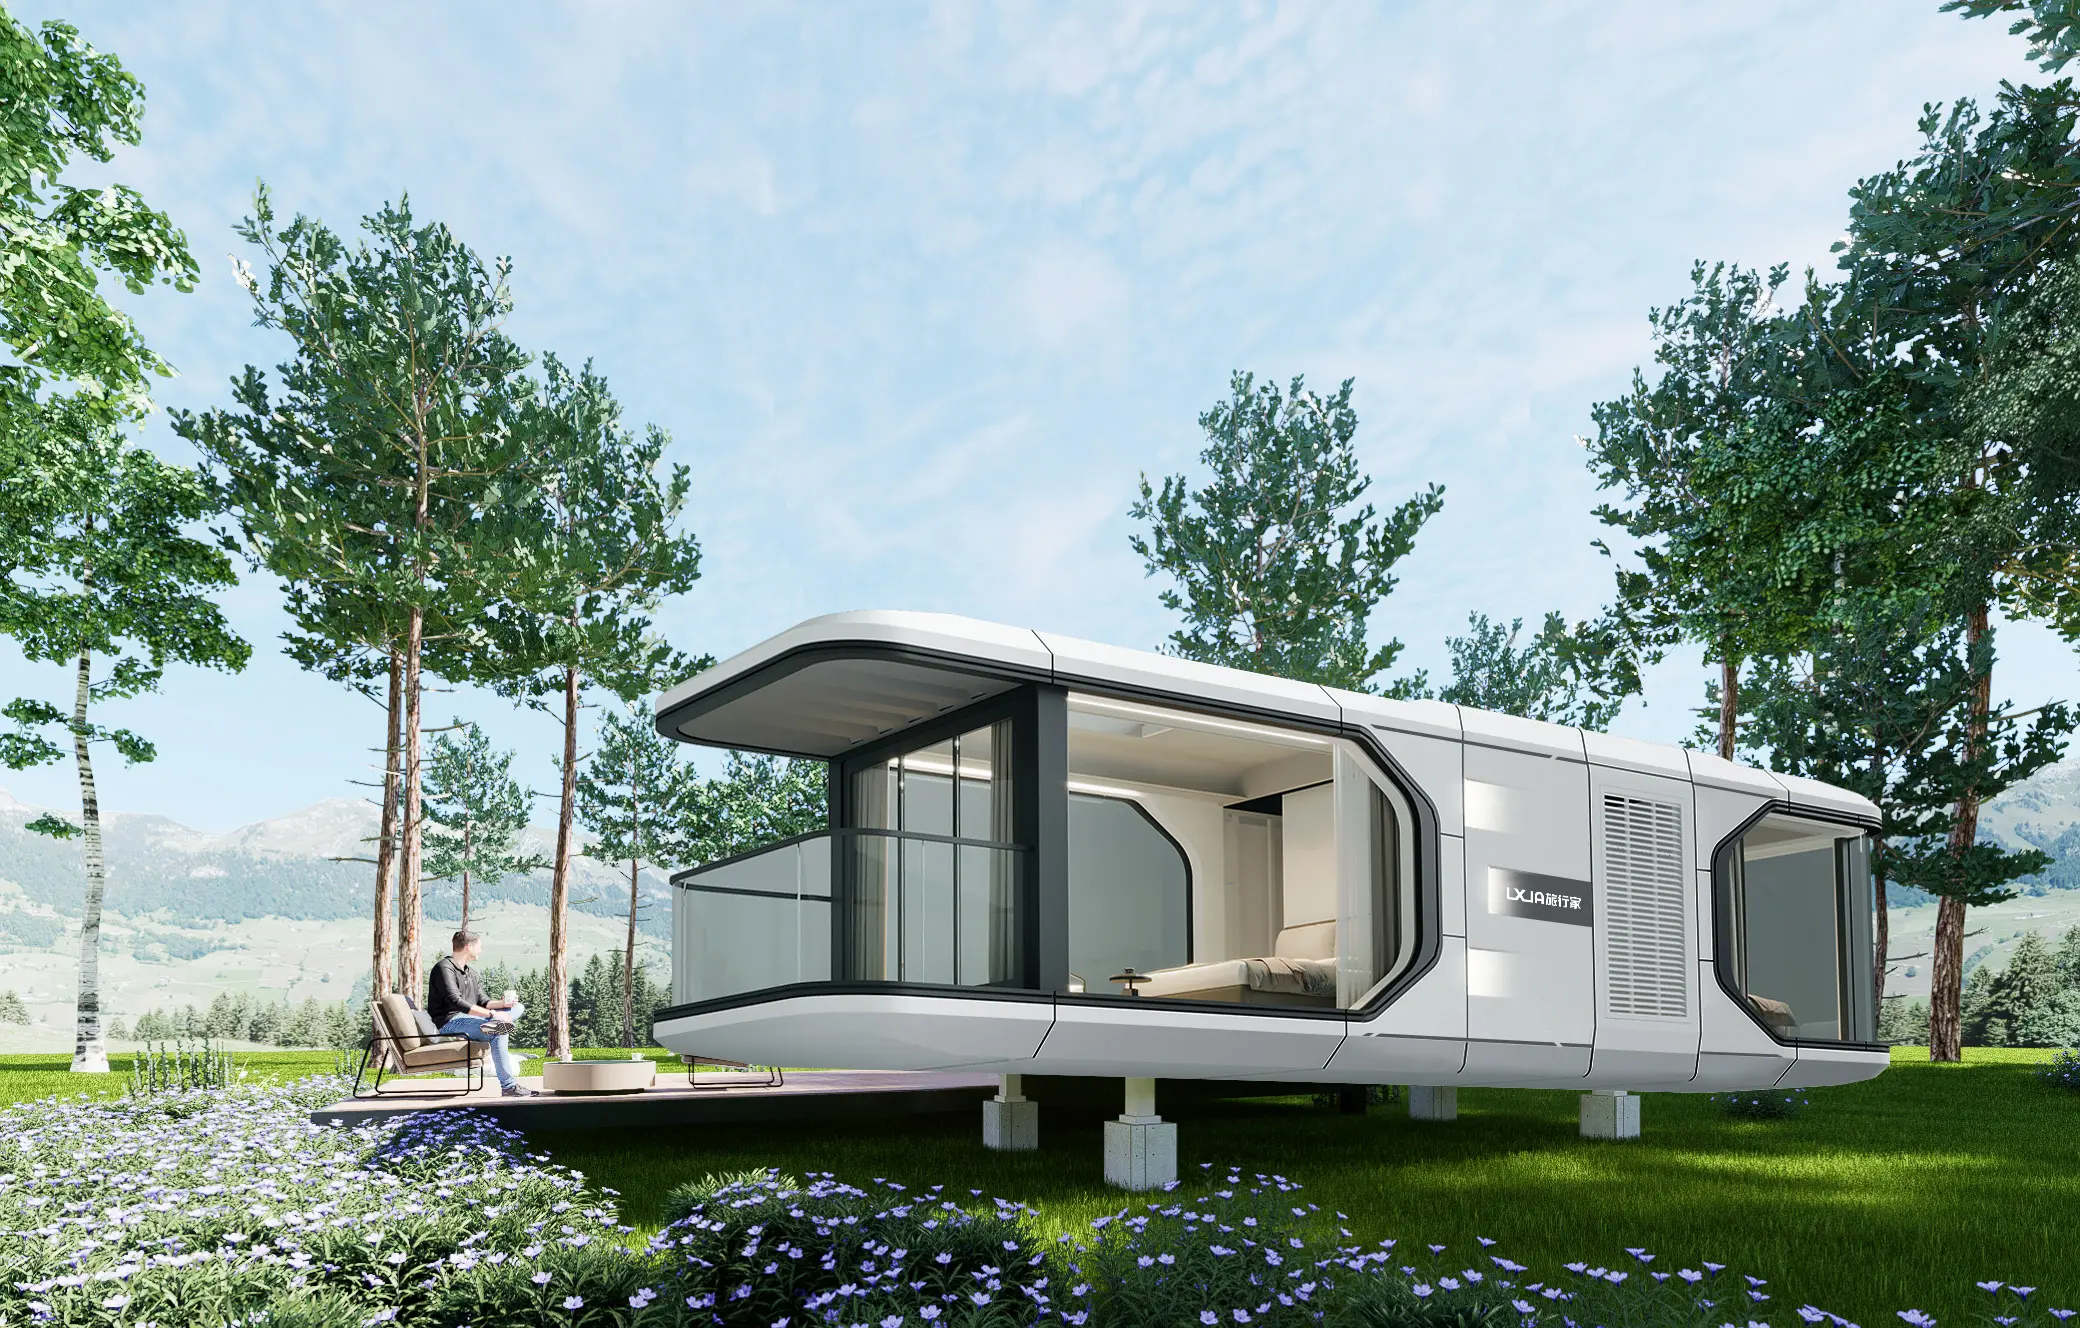 X7 New Design Hochwertige vorgefertigte Raumkapsel Andere Mobil heime Villen Winzige modulare Häuser Moderner Luxus container